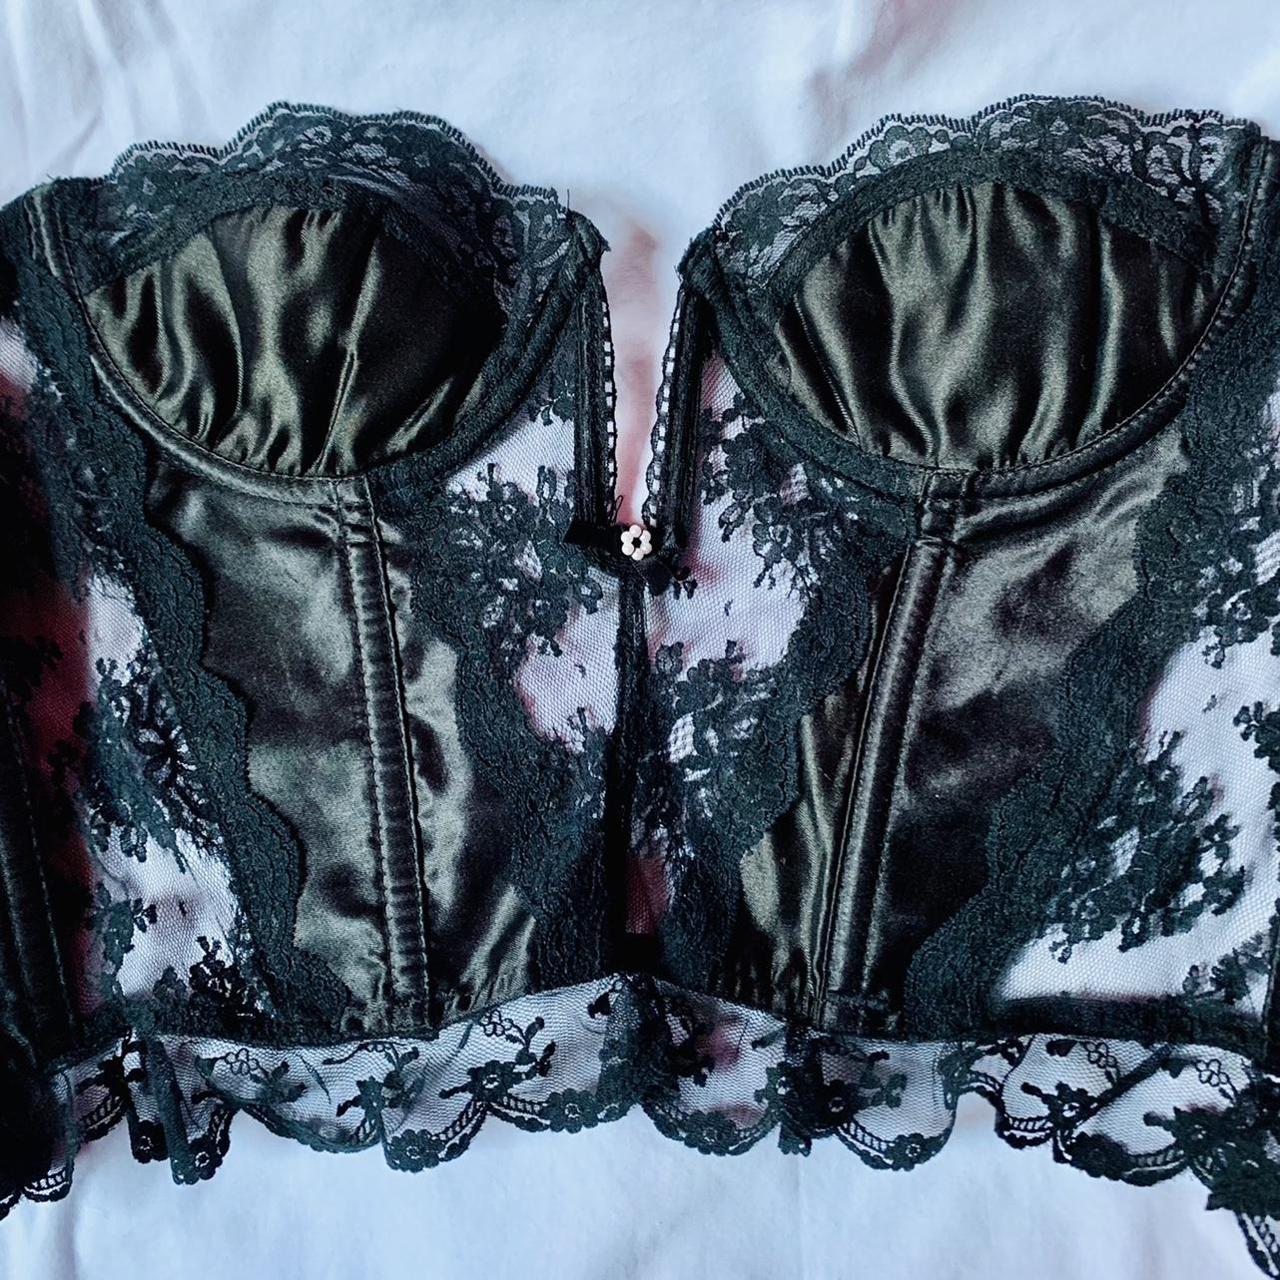 victoria's secret black lace corset bustier top SO - Depop